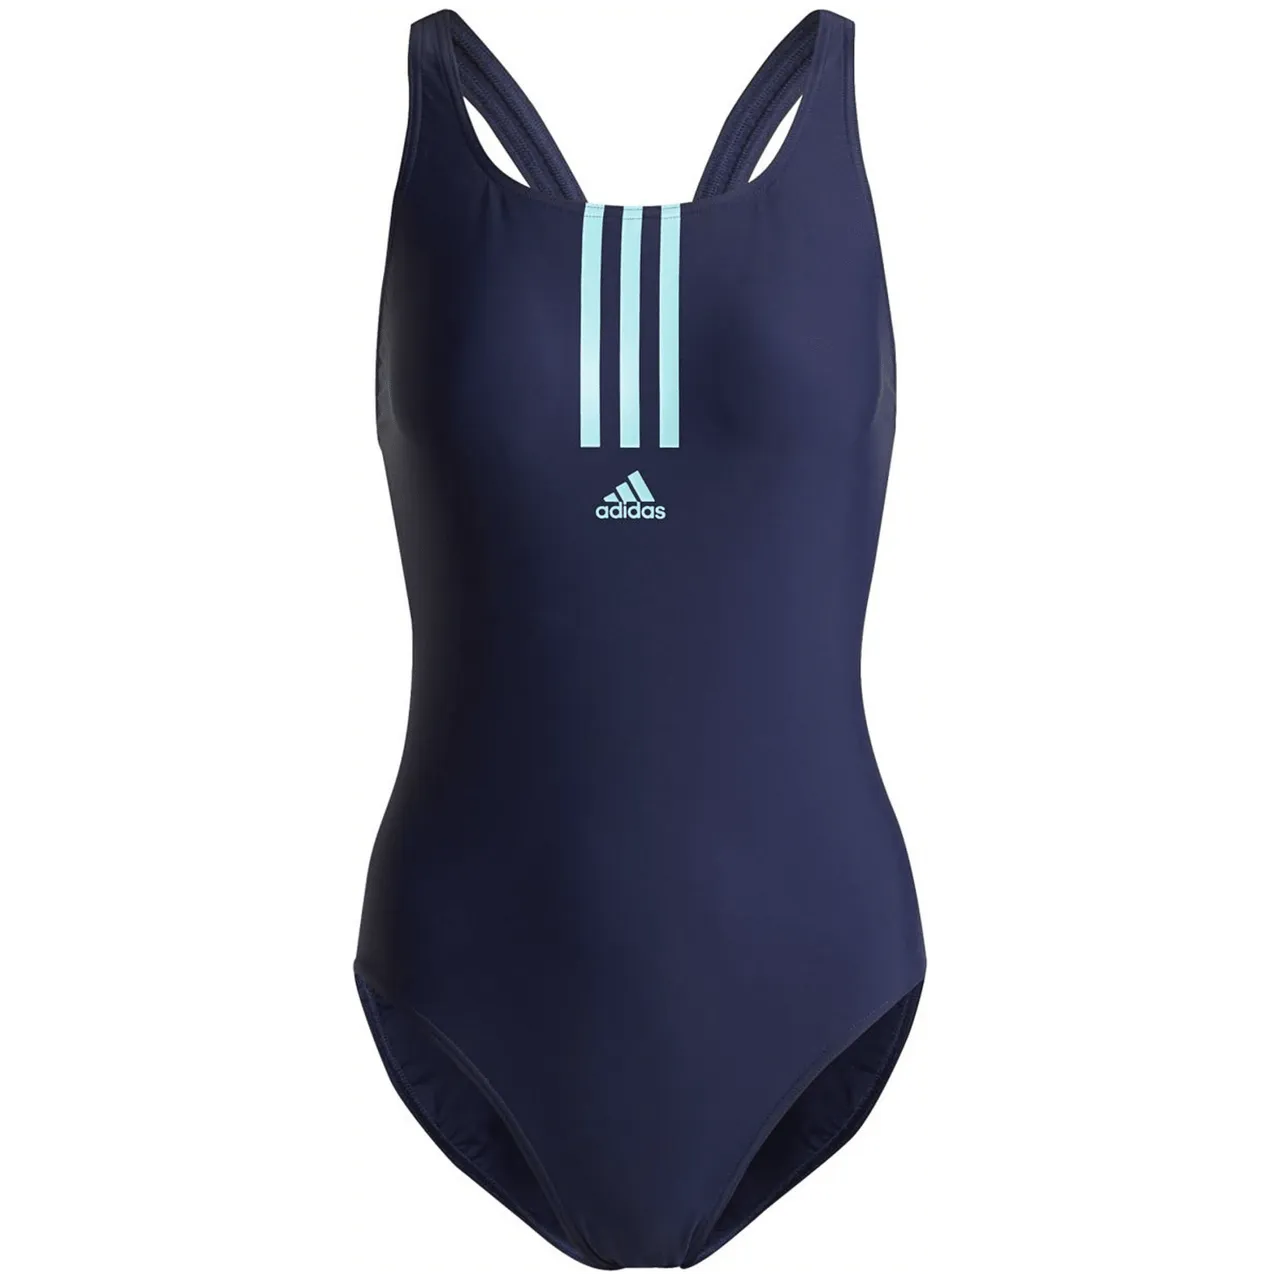 Adidas SH3.RO Mid 3-Streifen Badeanzug Damen blau